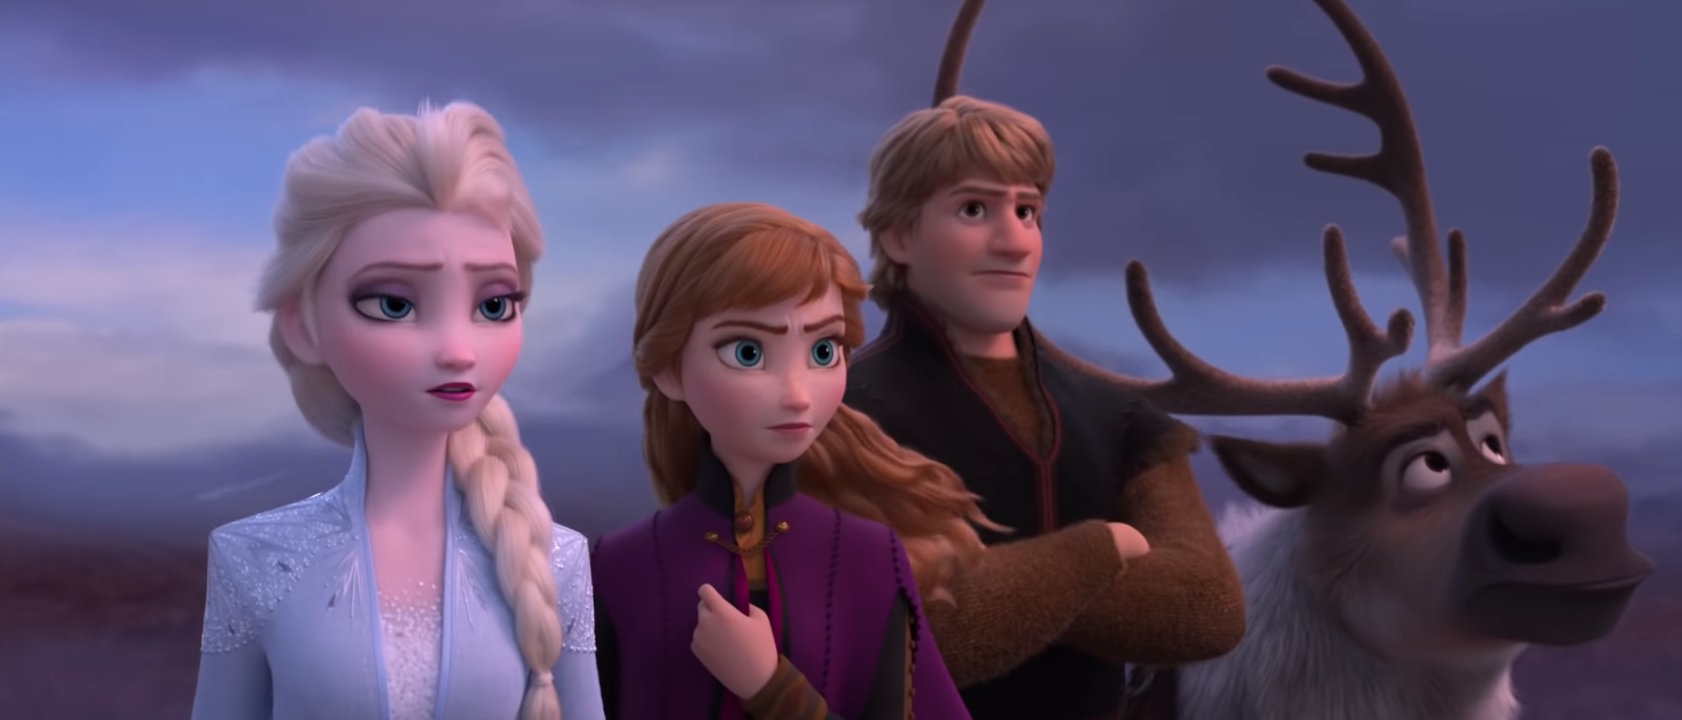 The Type of Love in Frozen 3 : r/Frozen